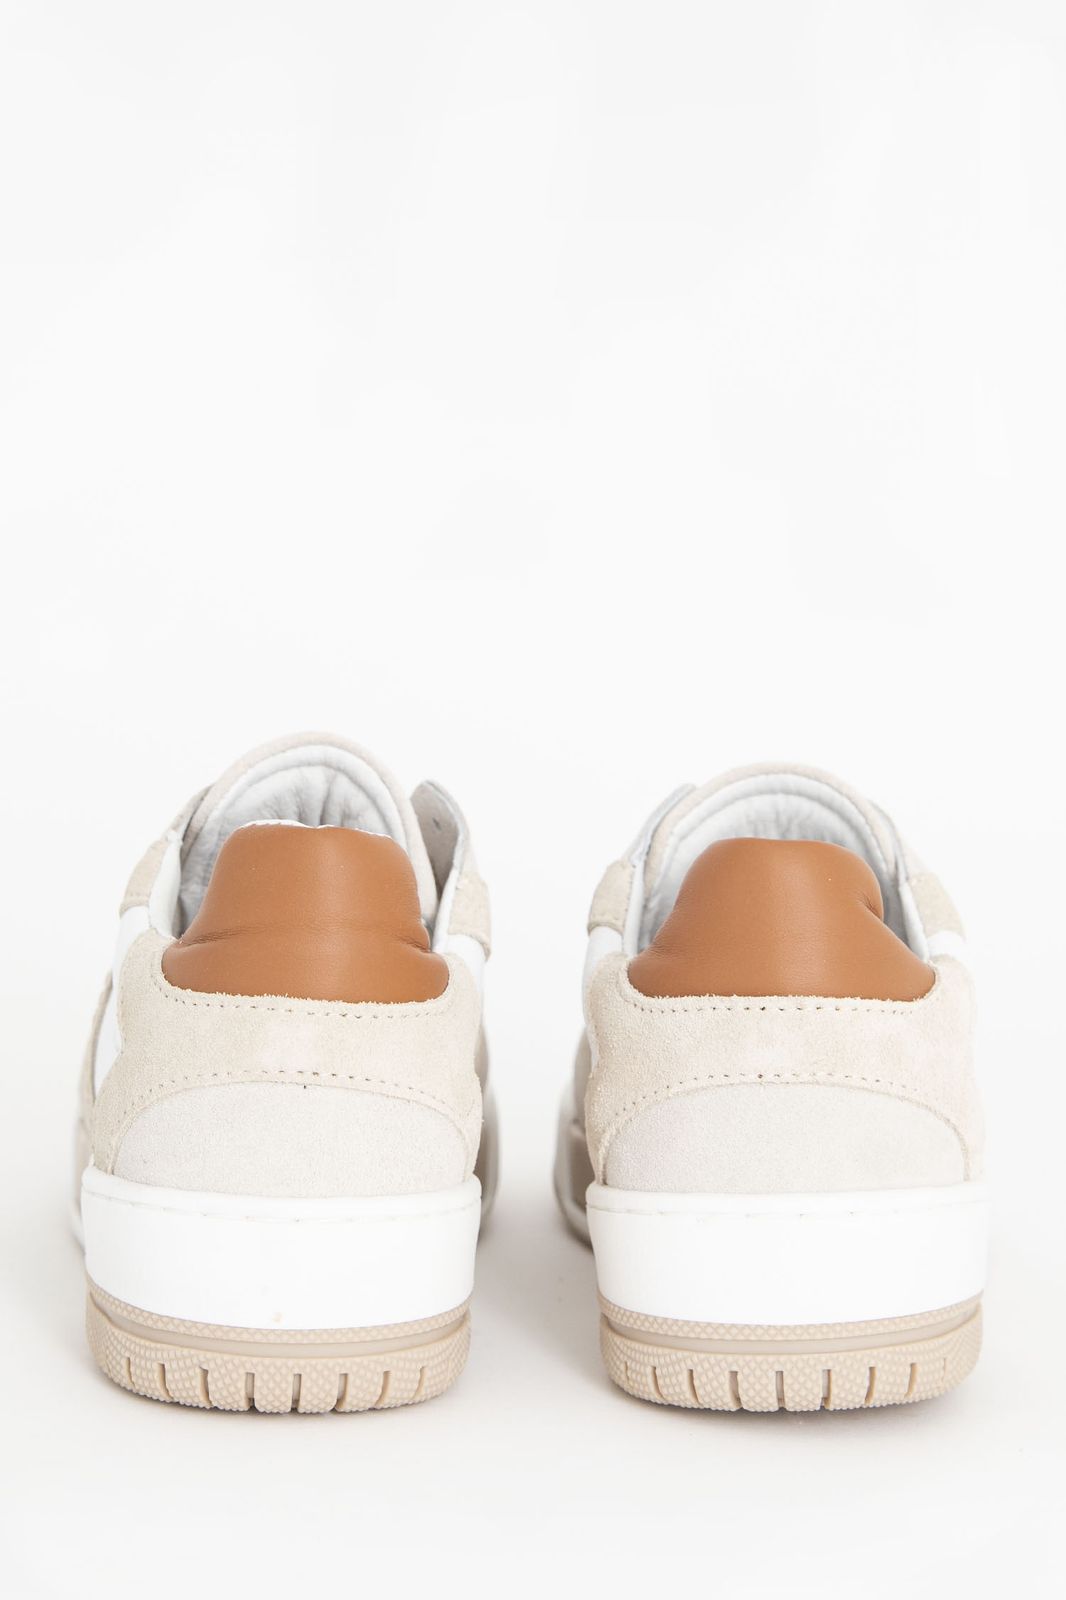 Witte sneakers met beige details - Dames |